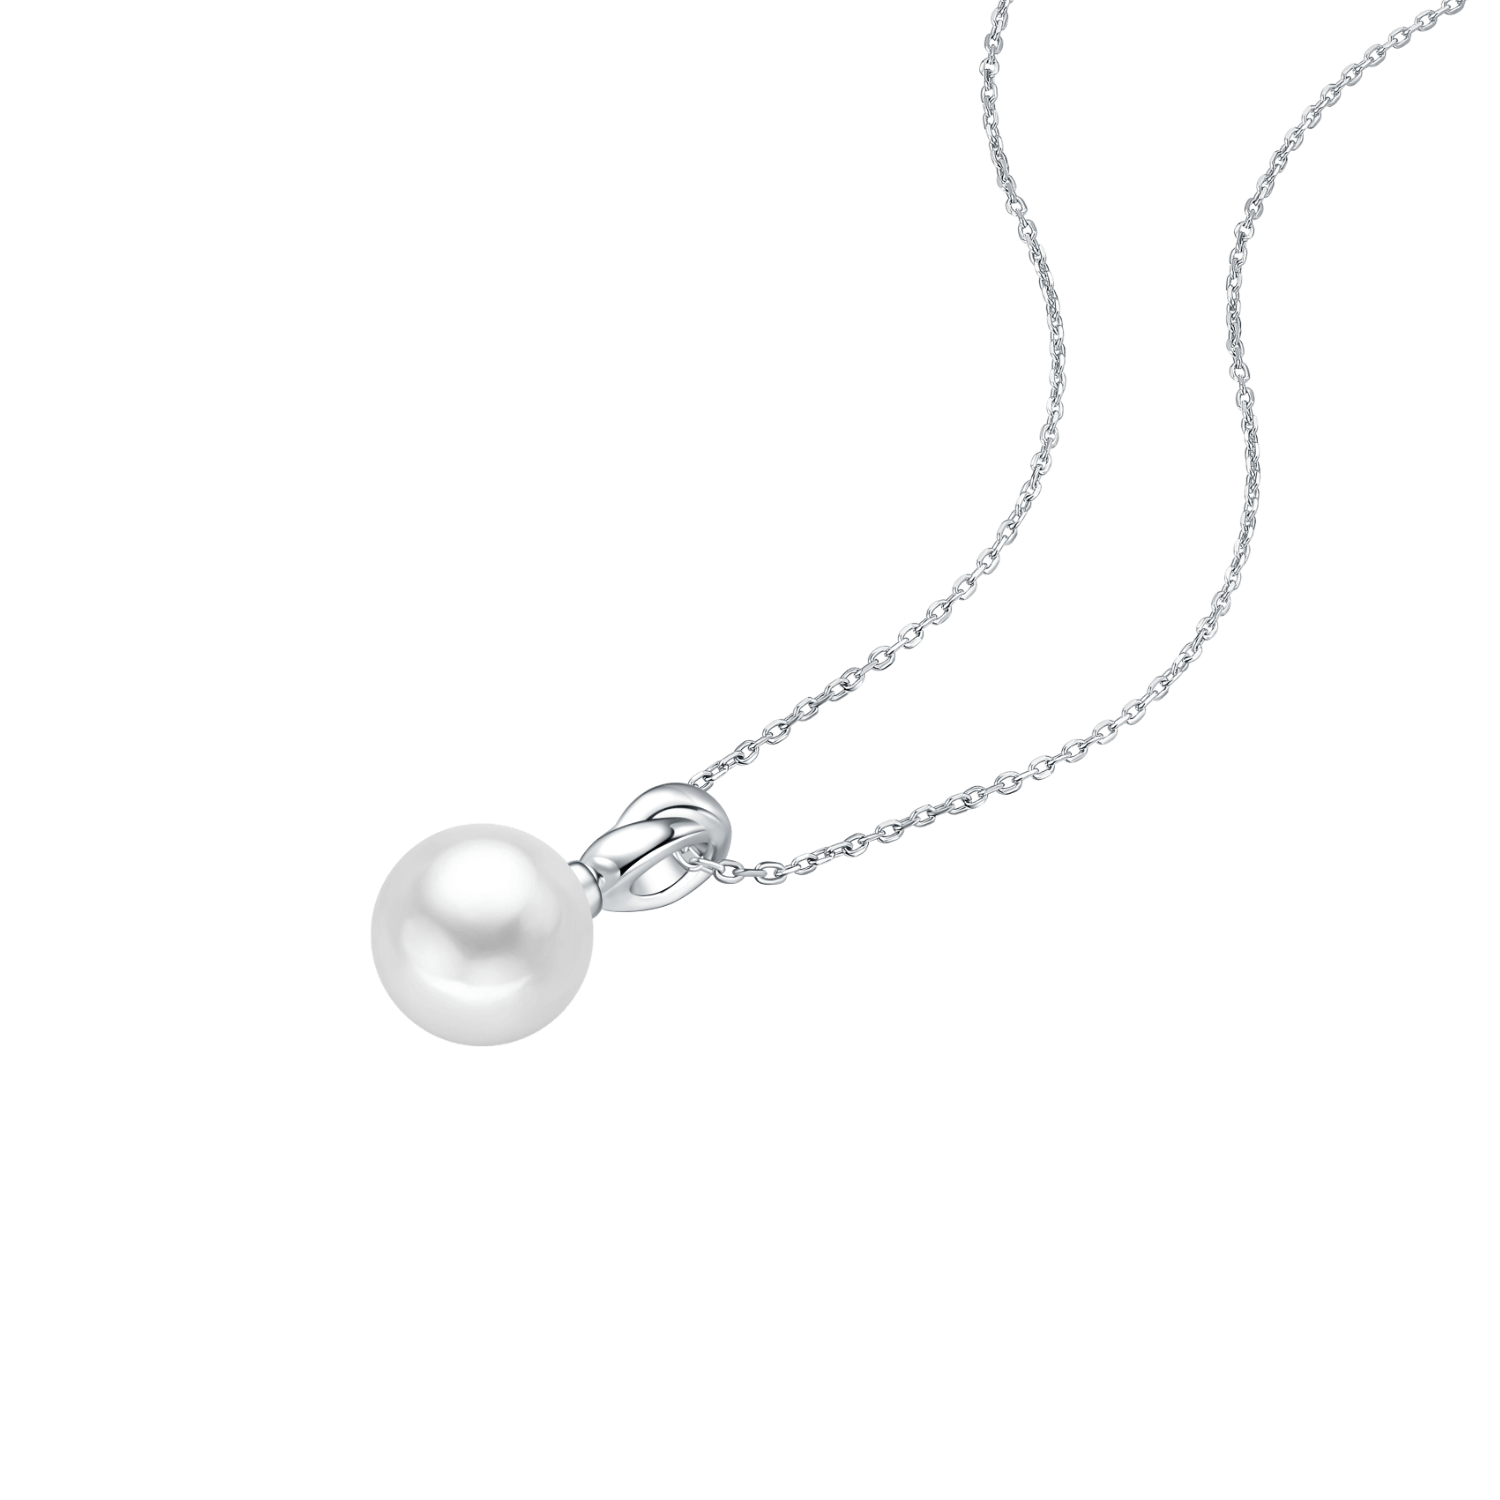 Little Bulb Pendant Necklace